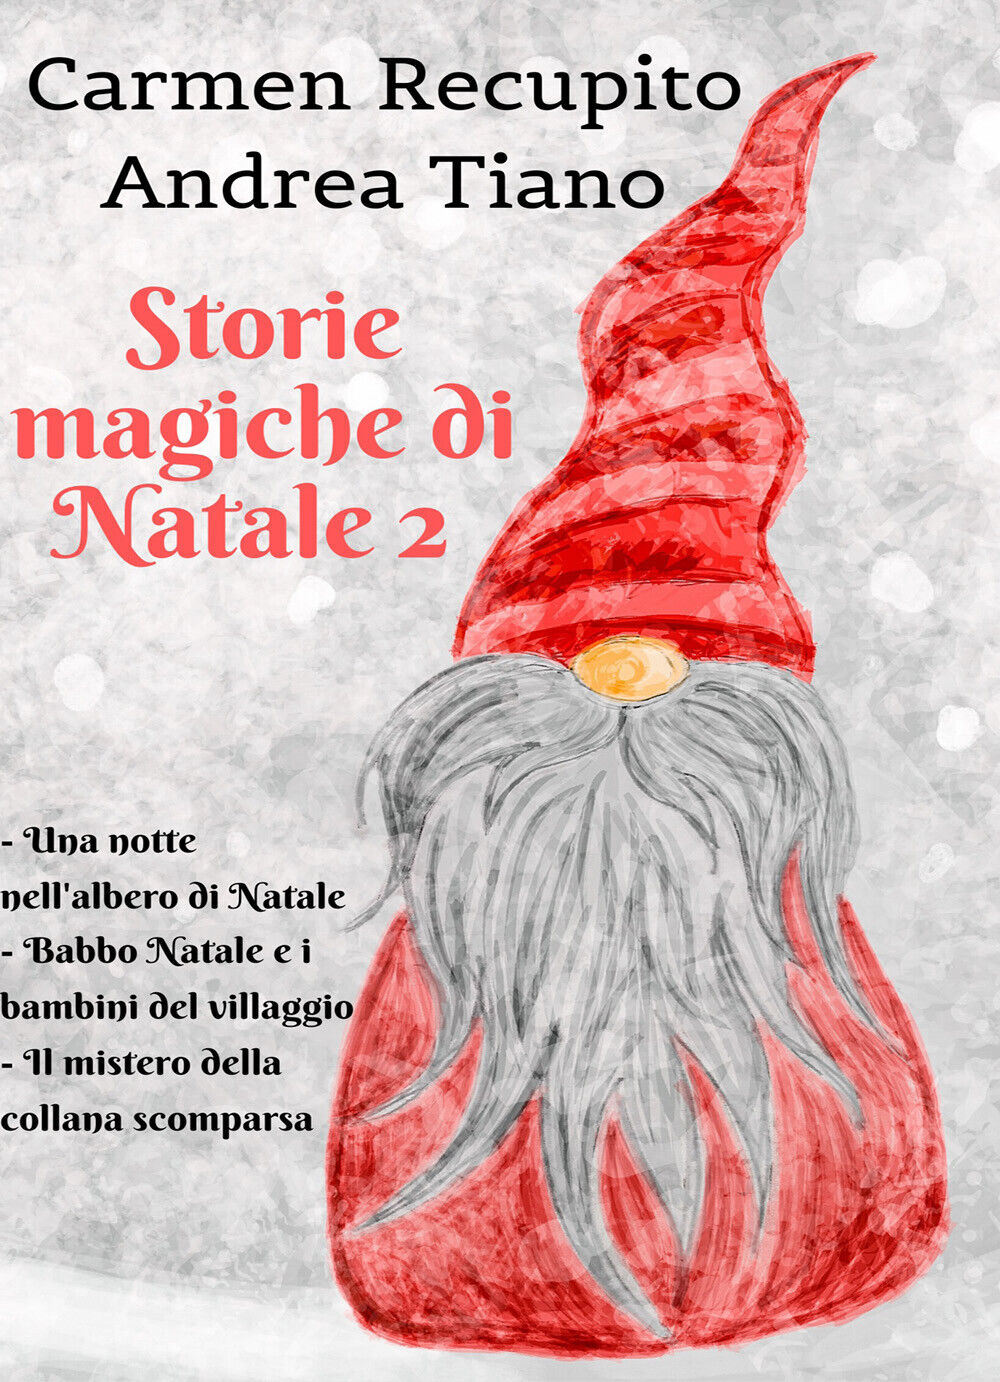 Storie magiche di Natale 2 - Carmen Recupito - Andrea Tiano,  2019,  Youcanprit